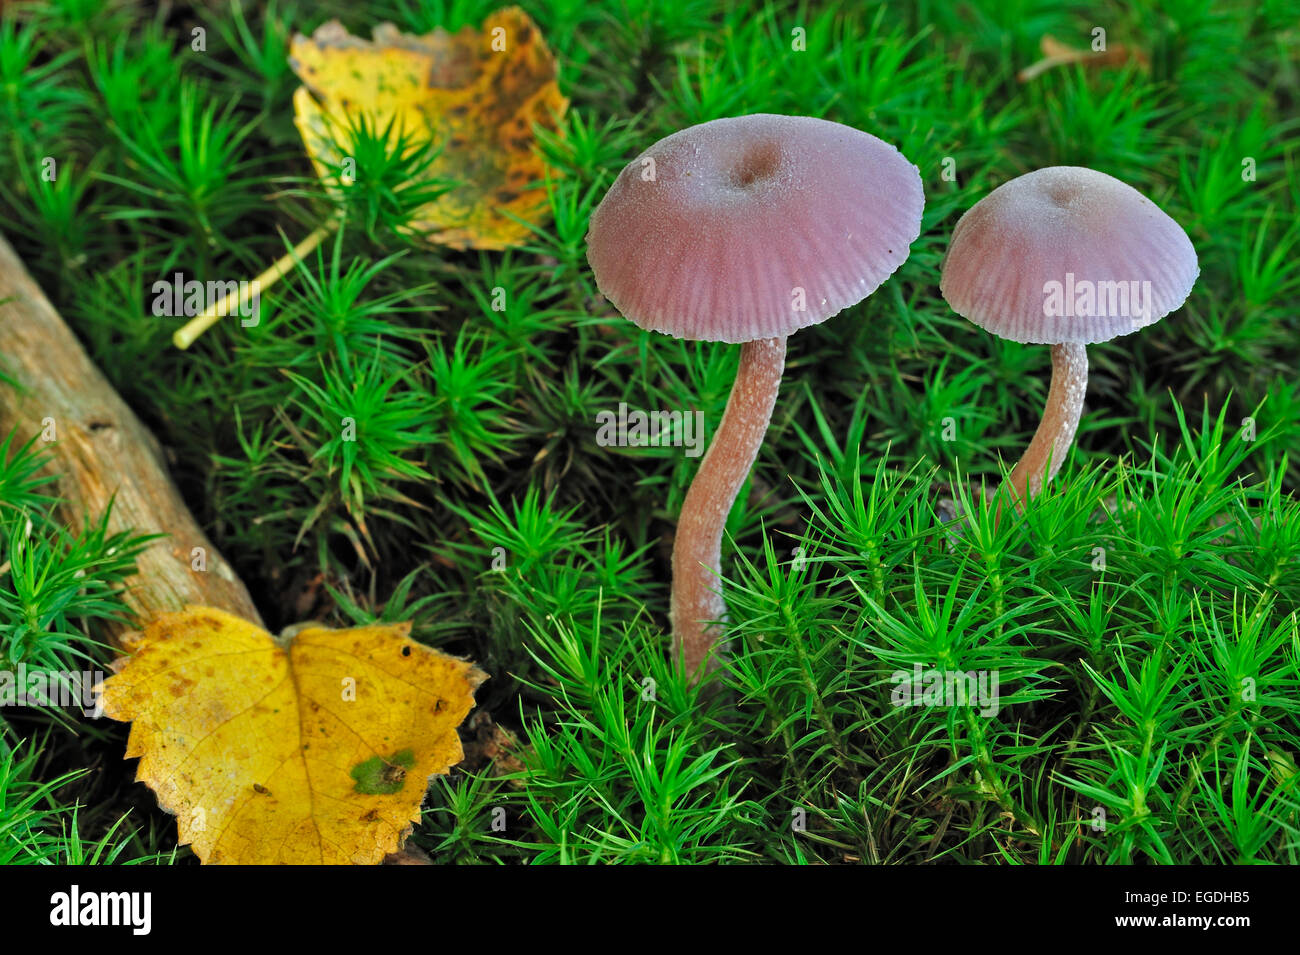 Le fourbe améthyste (Laccaria amethystina champignons / Laccaria amethystea) parmi la mousse dans la forêt d'automne Banque D'Images